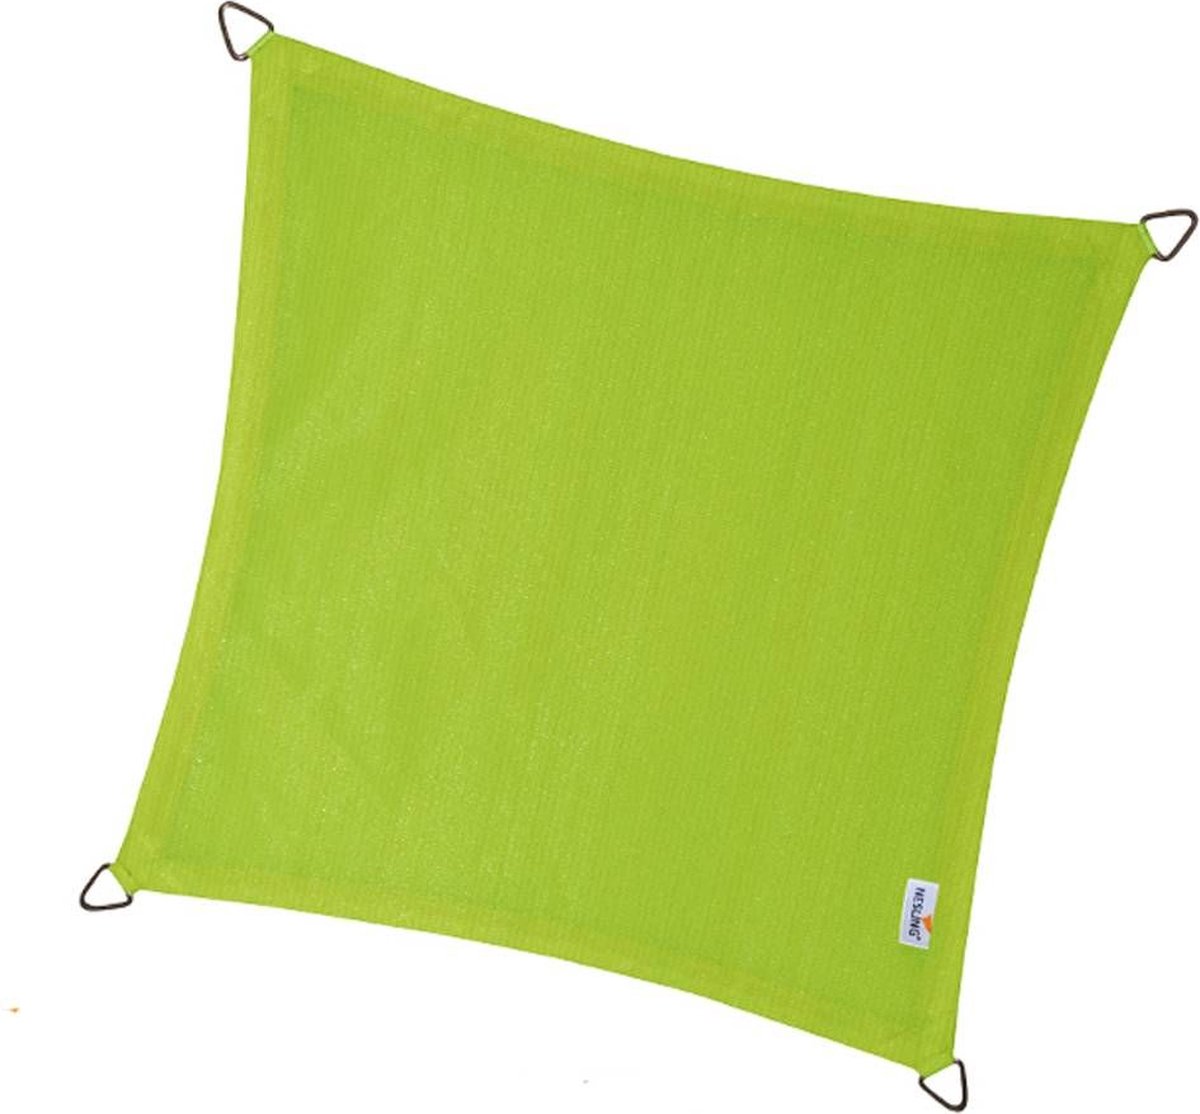 Compleet pakket: Nesling Coolfit 3,6x3,6 Lime Groen met bevestigingsset en buitendoekreiniger